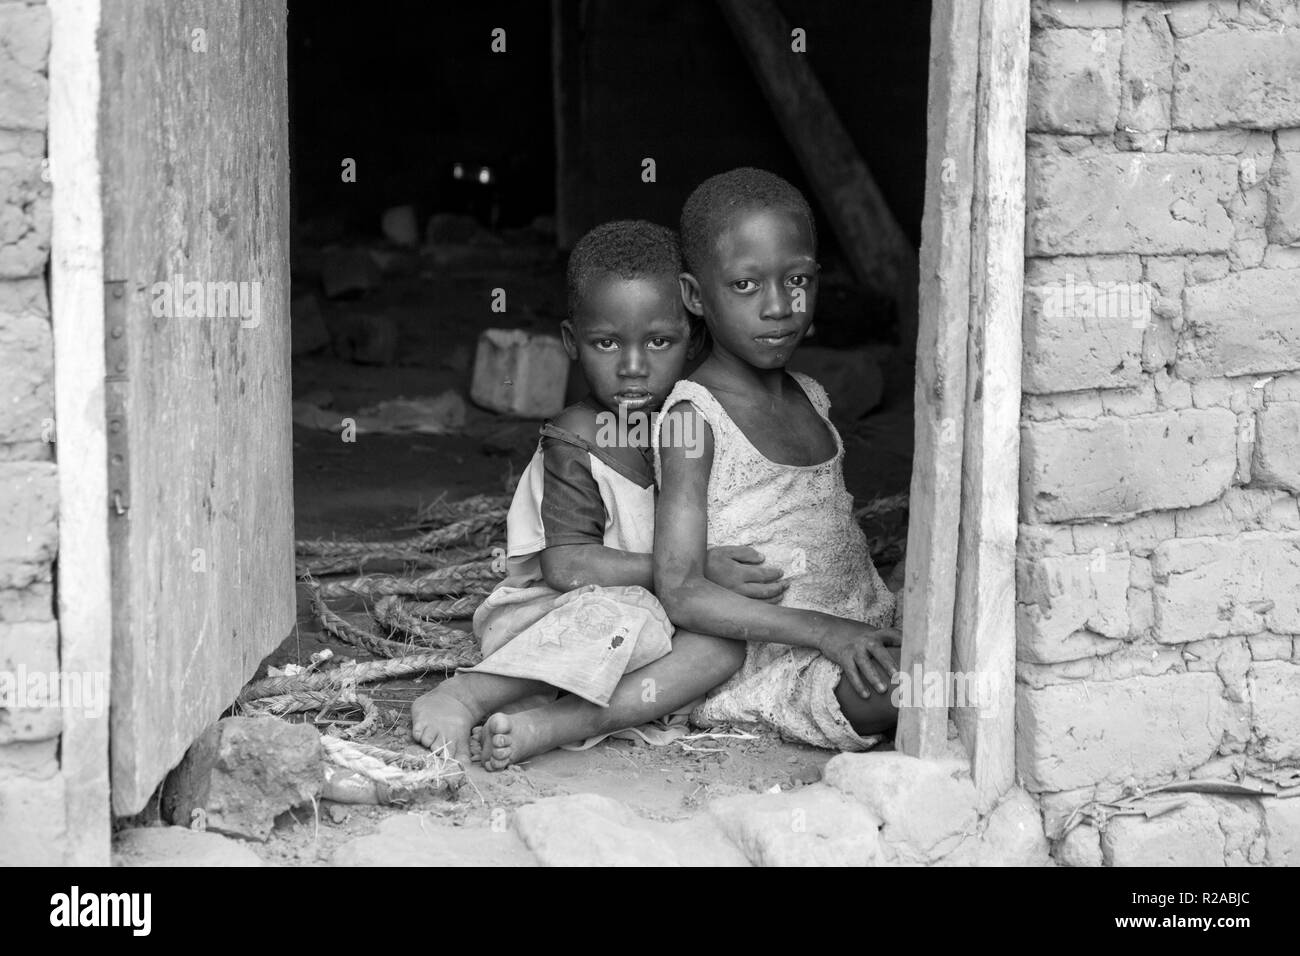 Zwei ugandische Kinder in zerlumpter Kleidung in einer Umarmung auf einem unbefestigten Boden an der Tür eines Hauses sitzen. Stockfoto